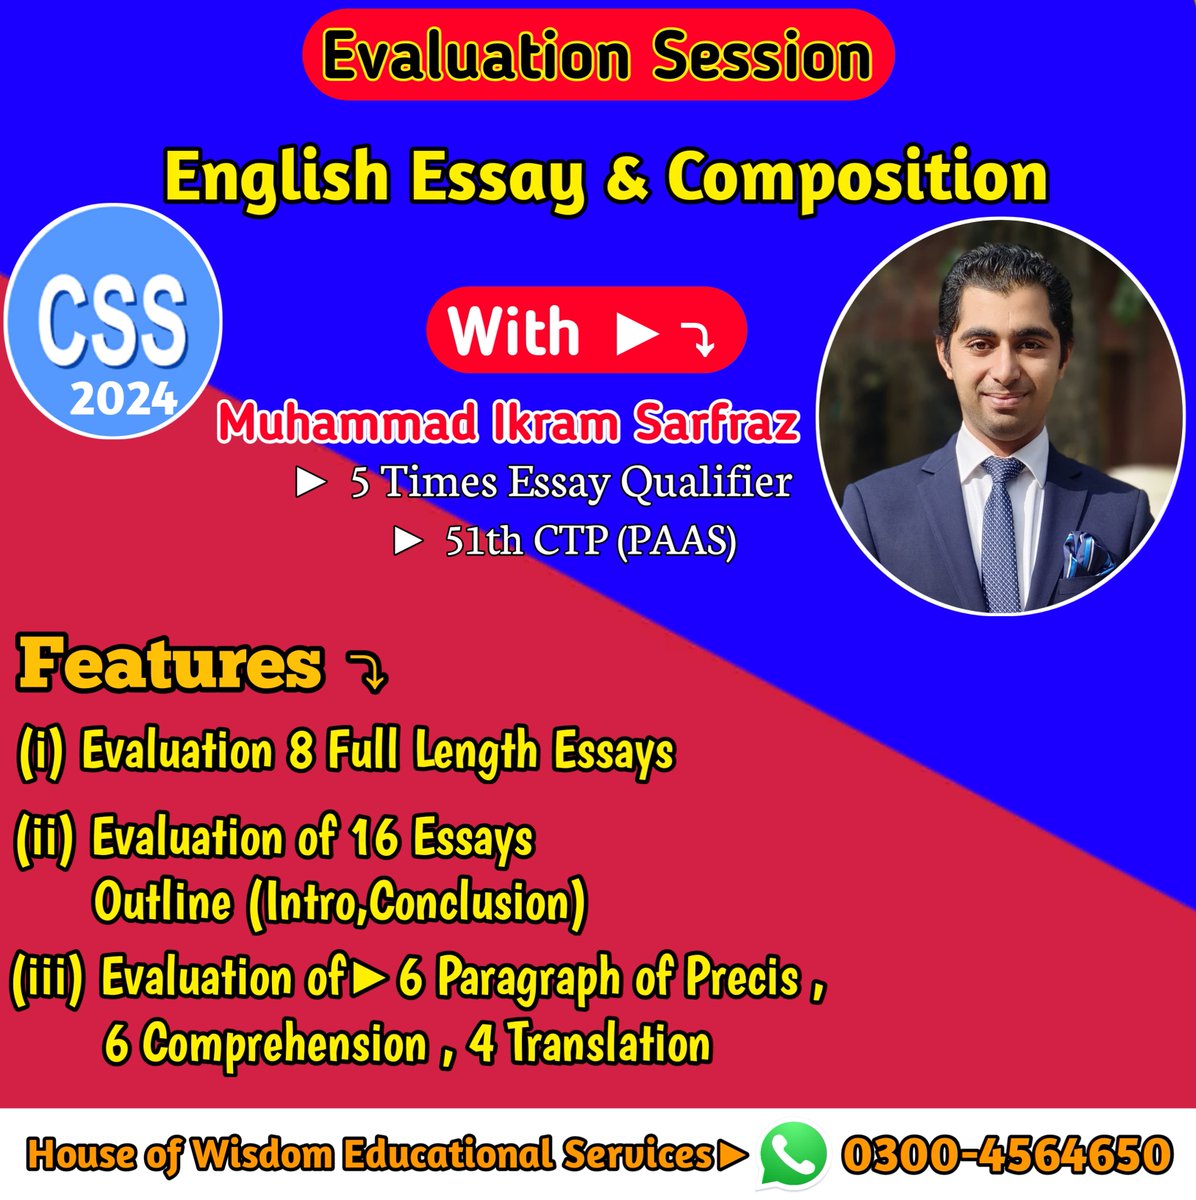 #EnglishEssay
#CSSEnglishEssayandComposition
#EnglishEvaluationSession 
#CSS2024